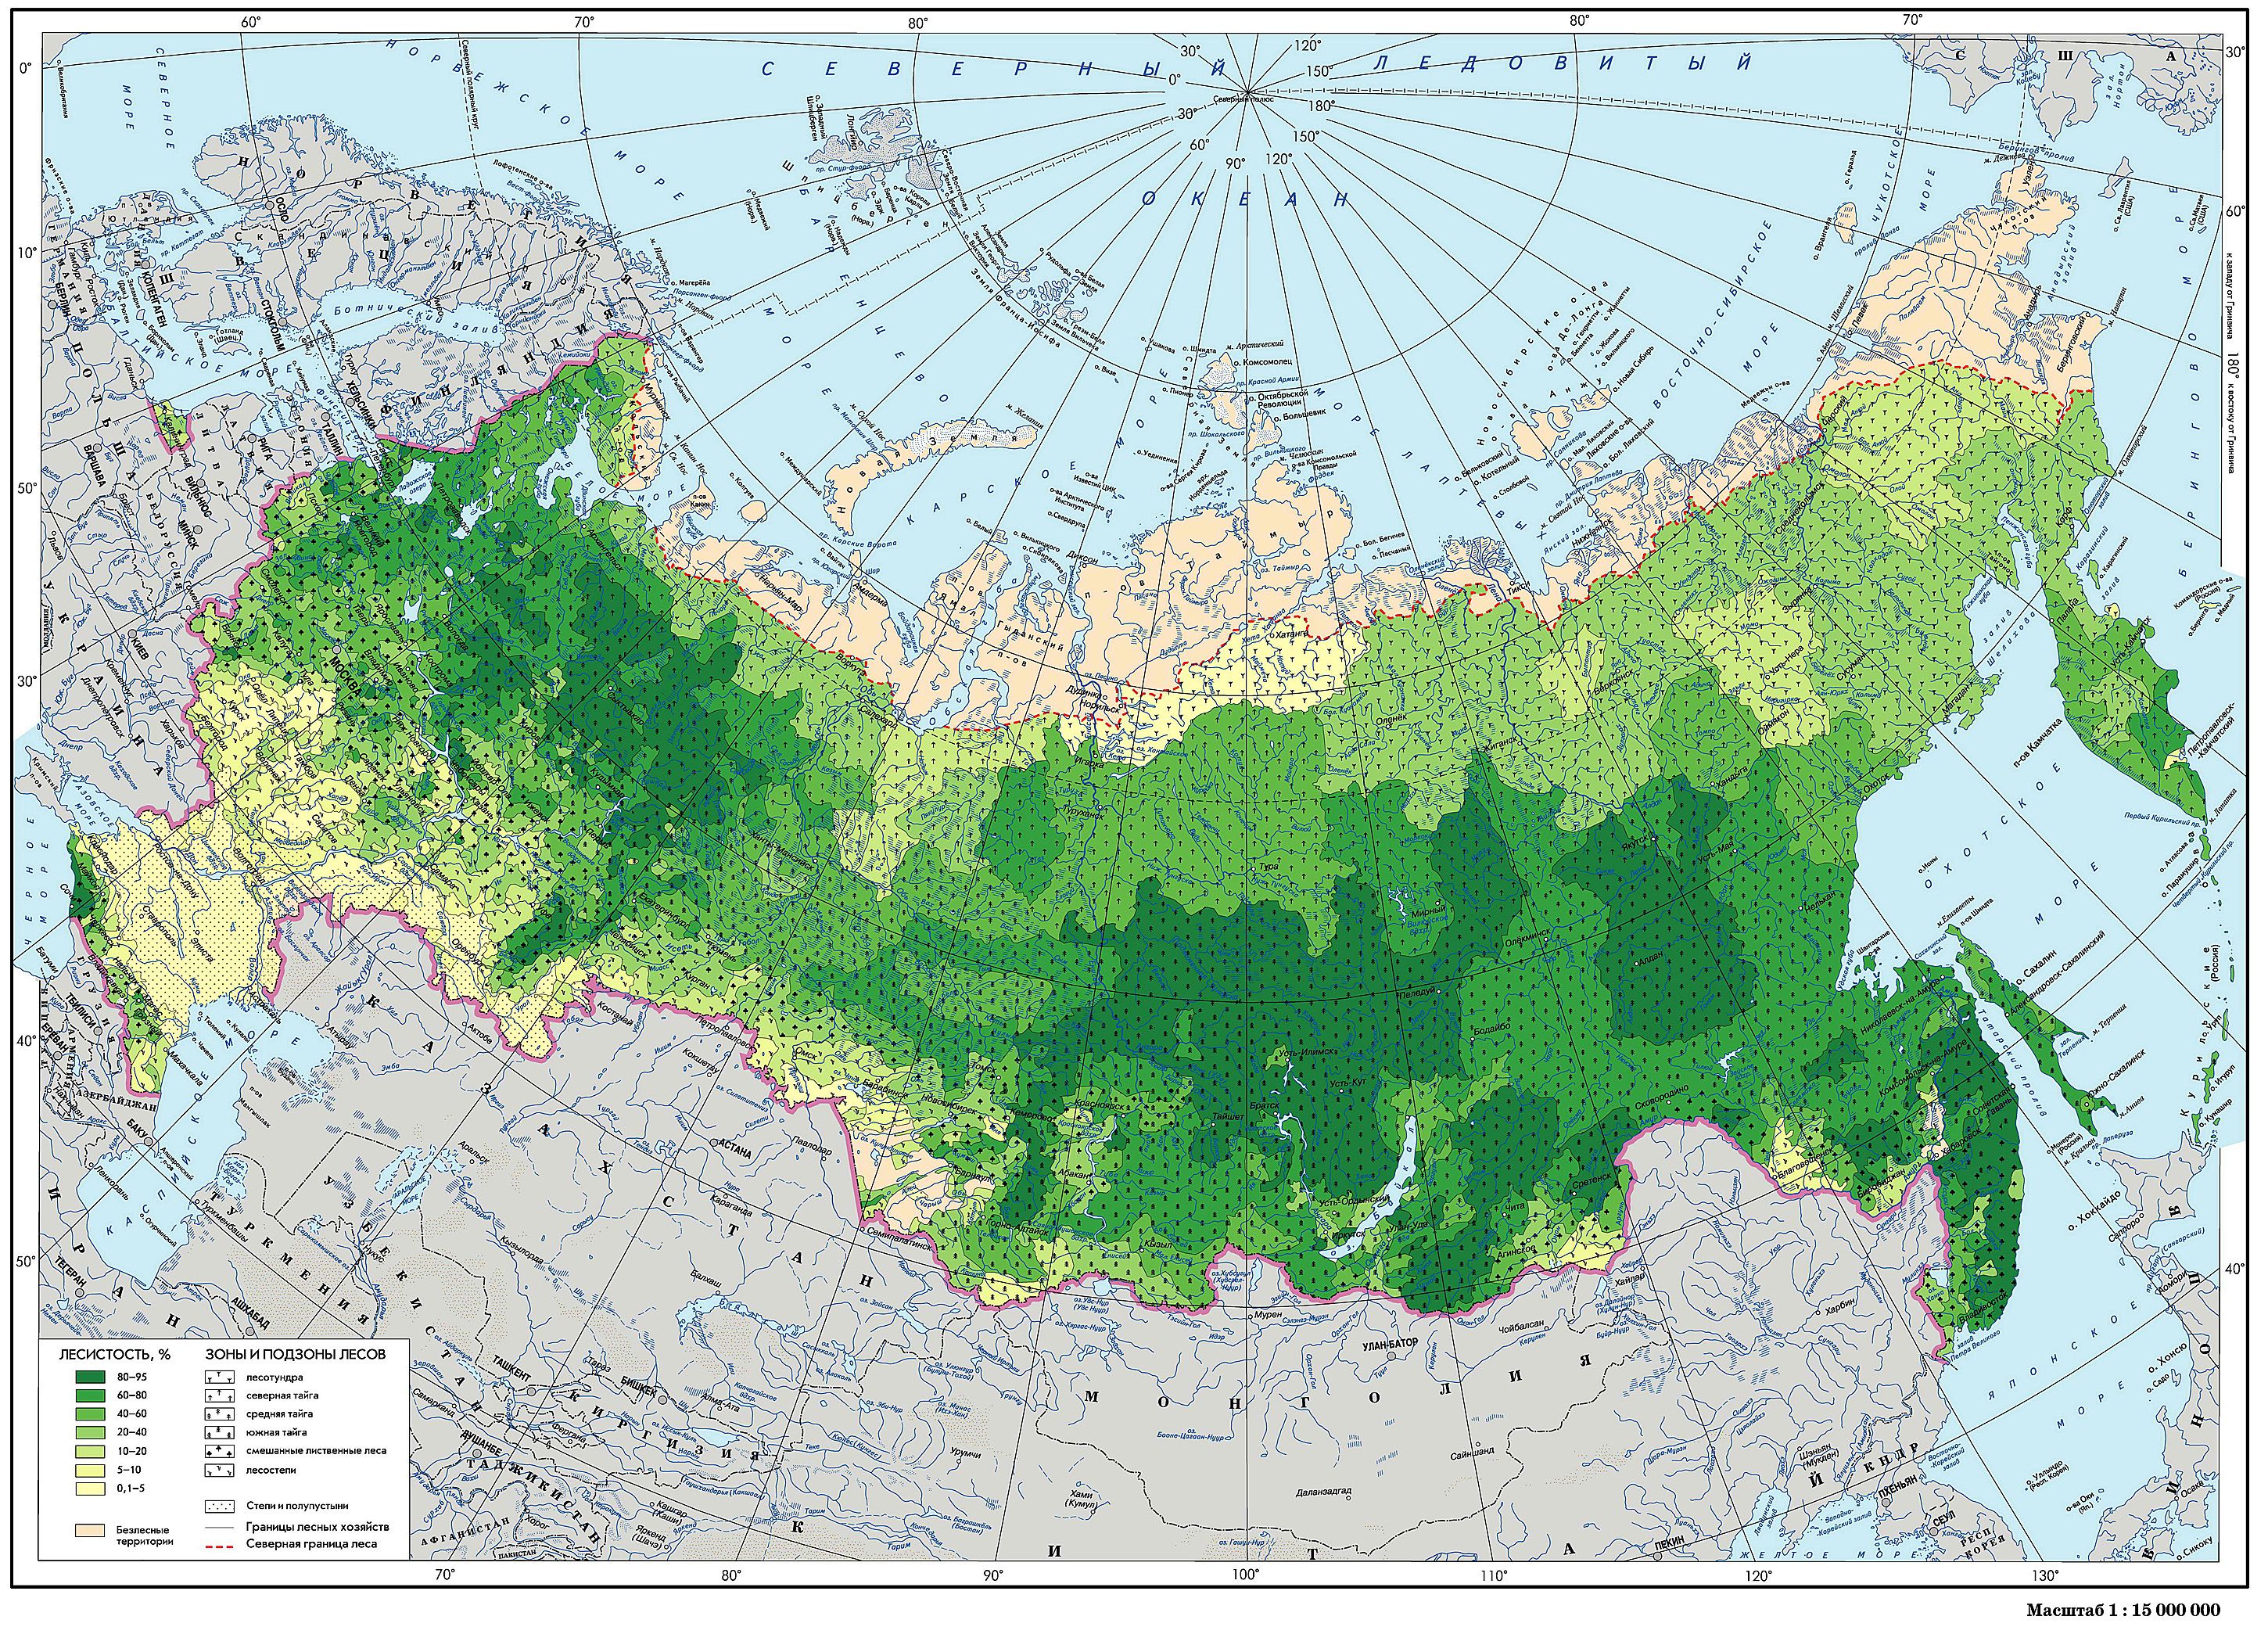 Хвойная на карте. Карта лесов РФ. Карта хвойных лесов России. Хвойные леса России на карте. Карта лесов центральной России.